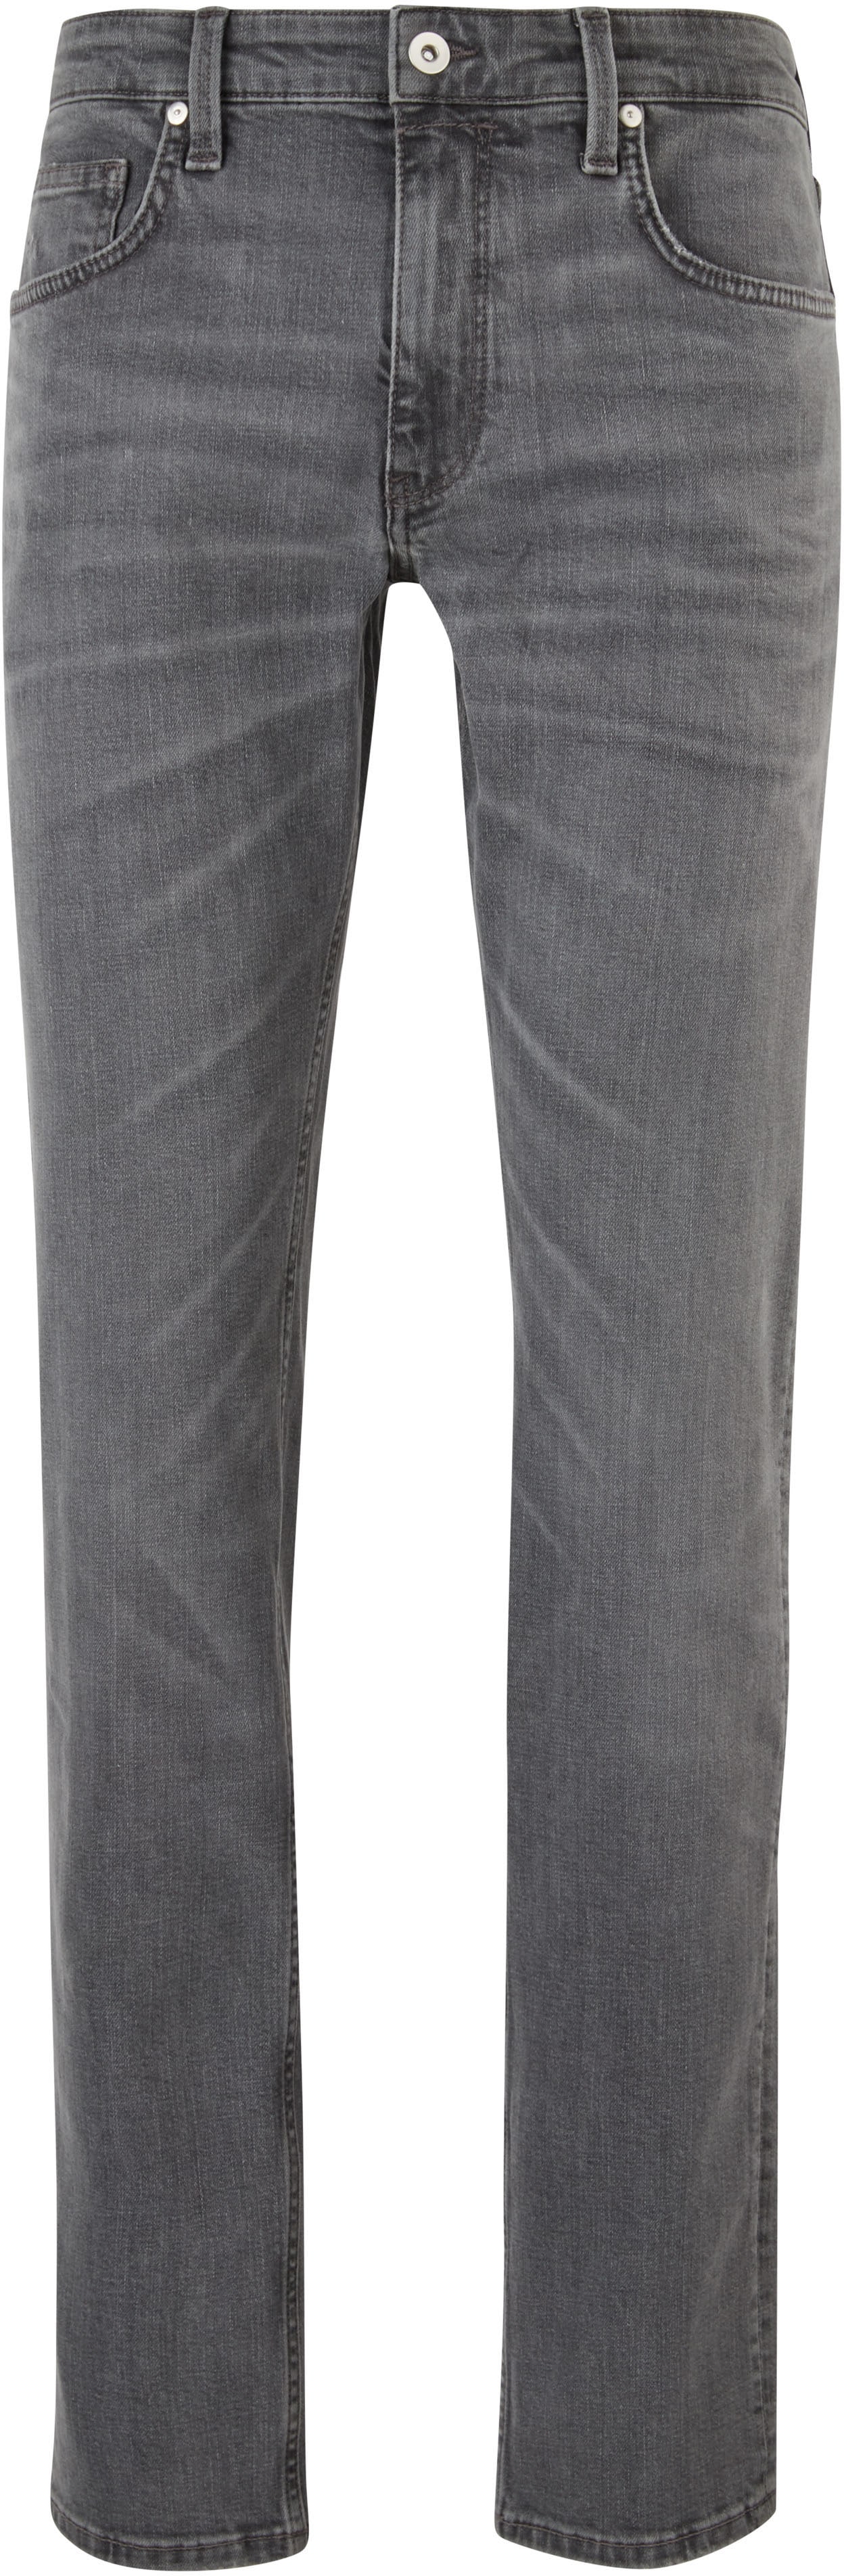 s.Oliver 5-Pocket-Jeans, mit authentischer Waschung von s.Oliver